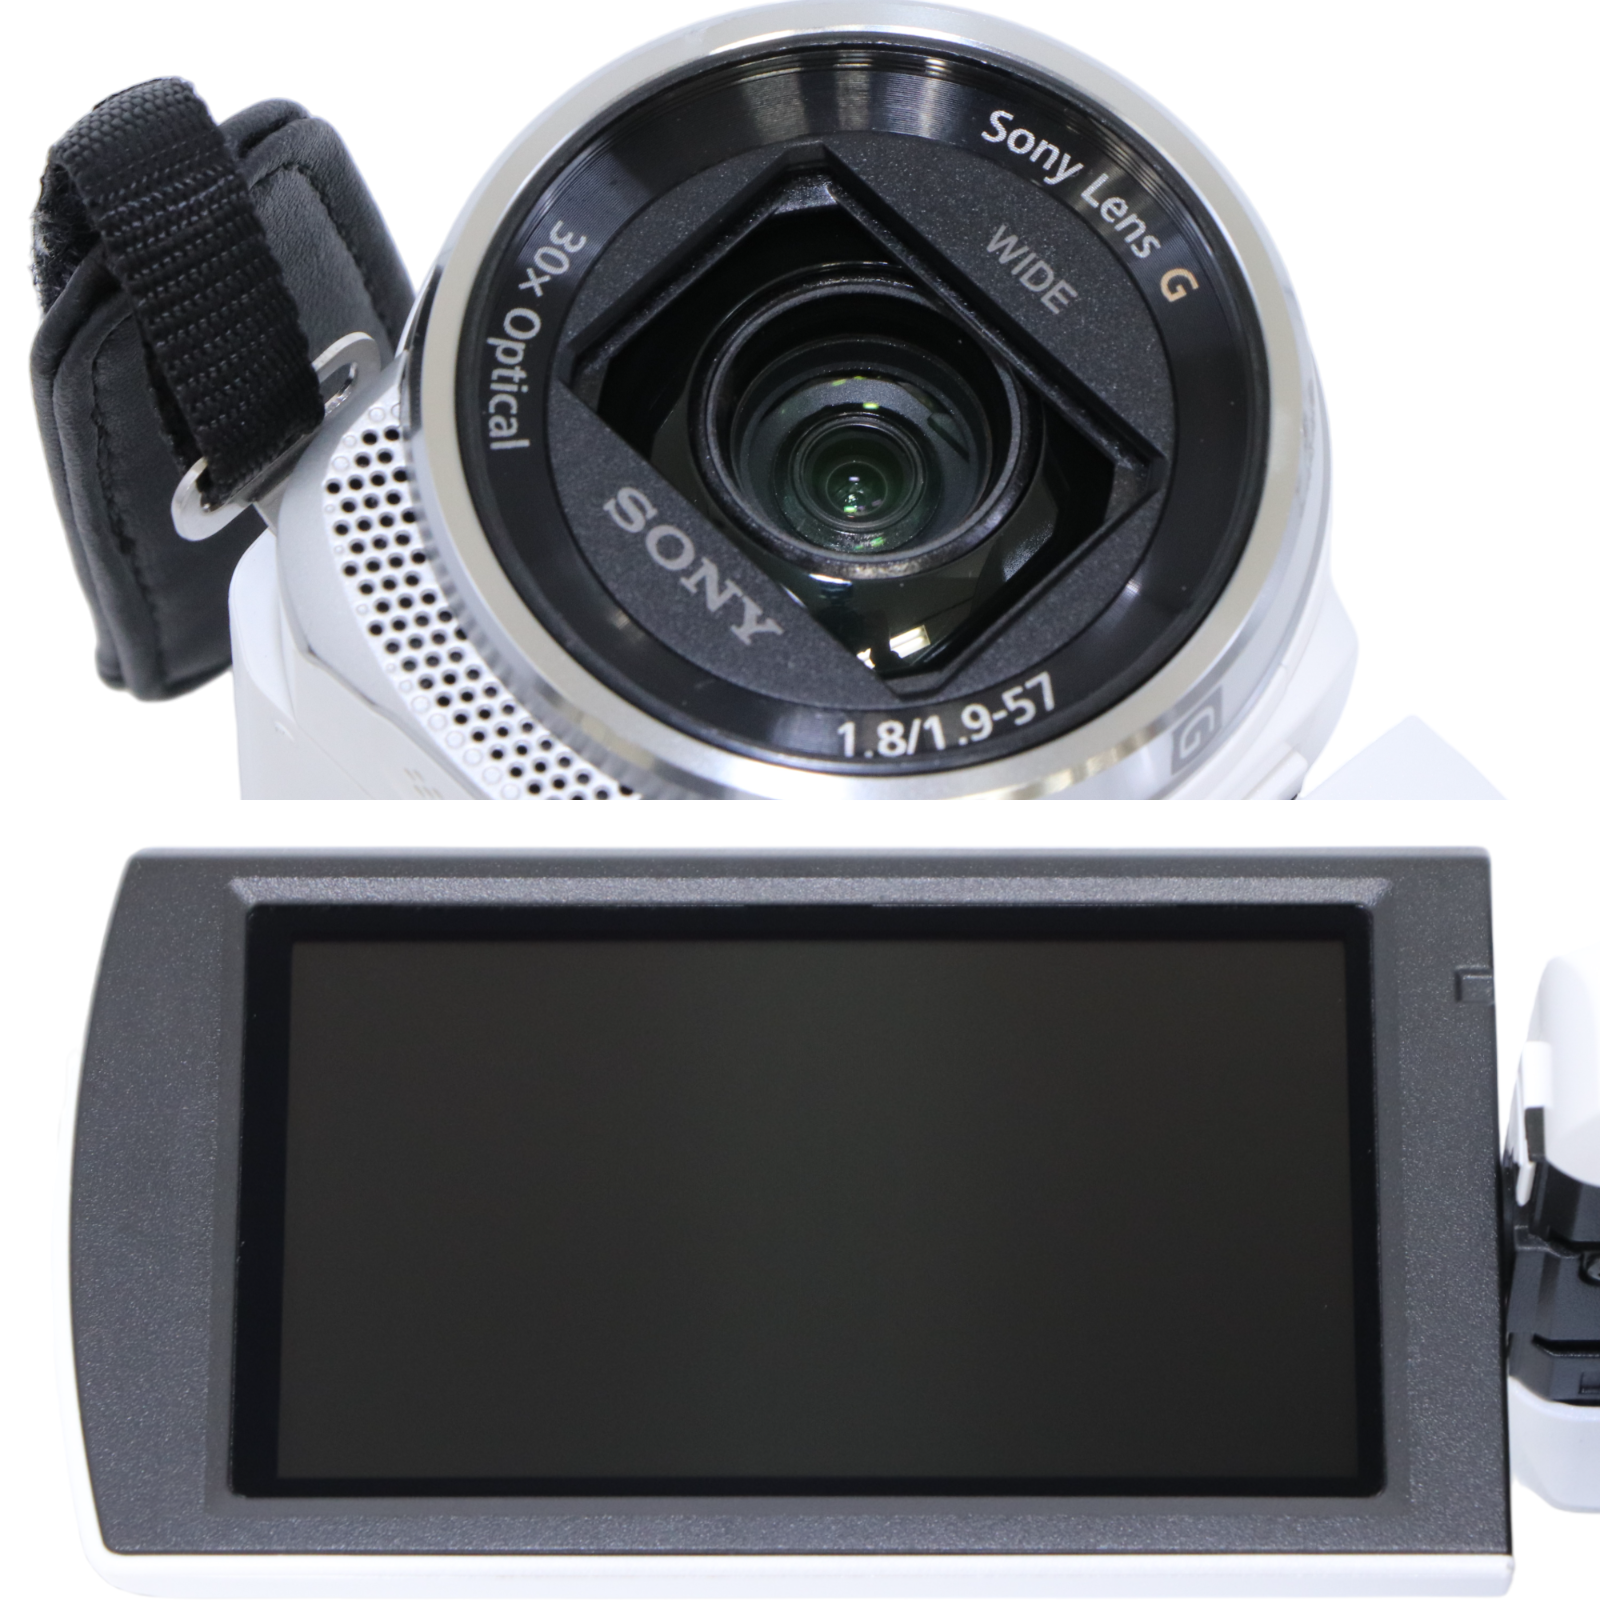 値引きする SONY HDR-CX720 【ジャンク】 ビデオカメラ - www.cqr.co.uk